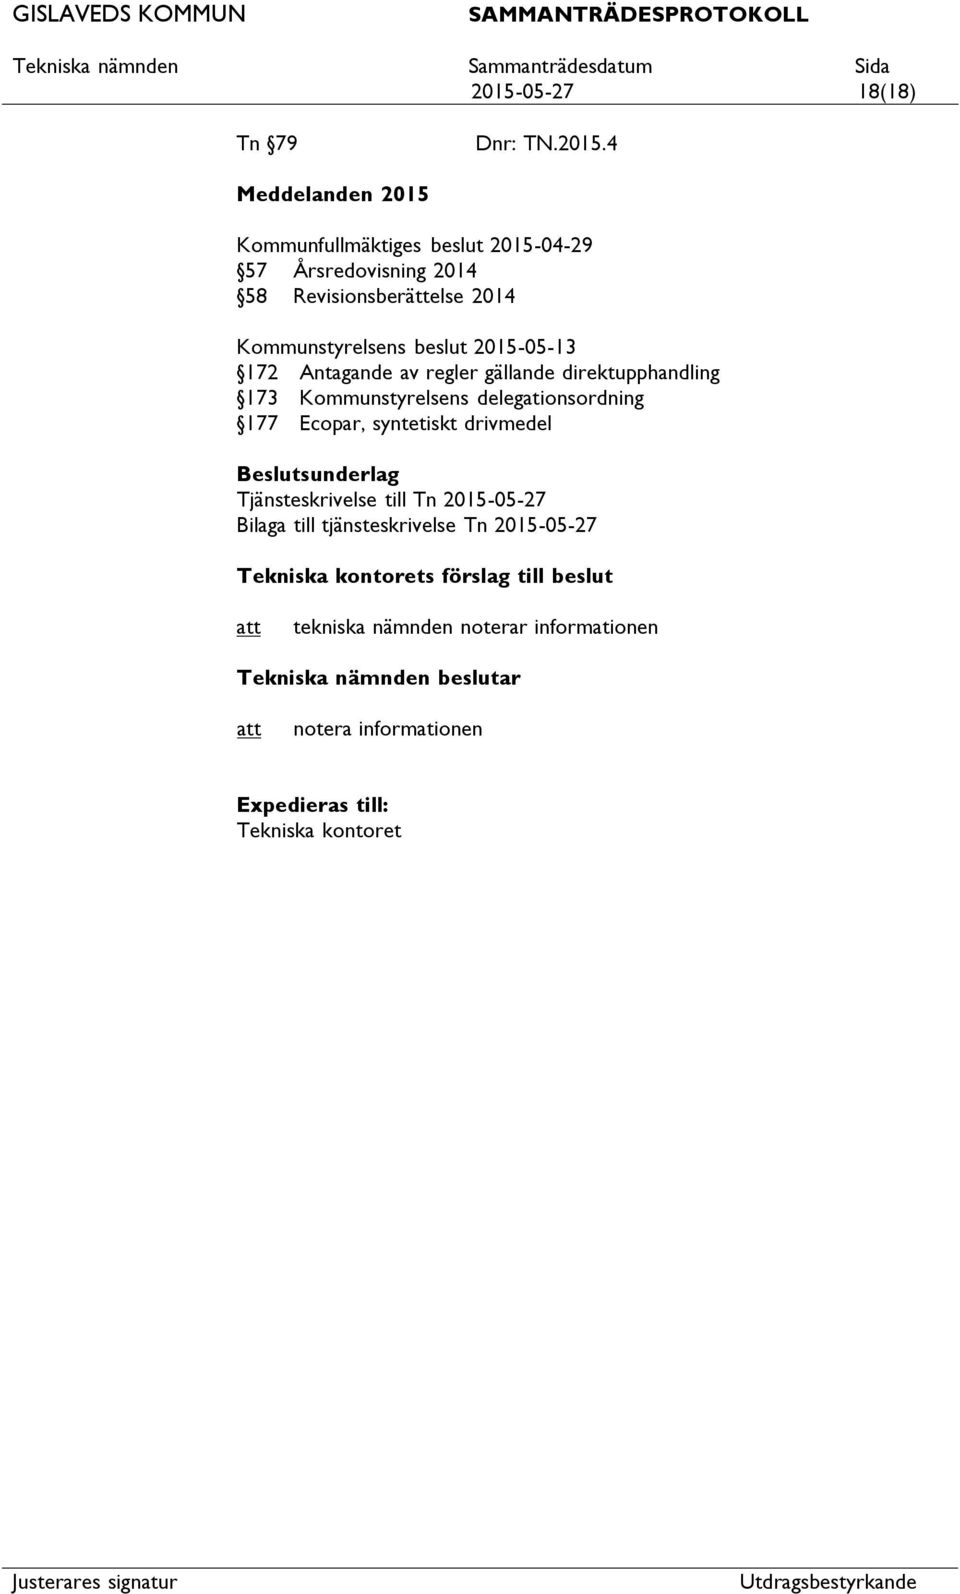 173 Kommunstyrelsens delegationsordning 177 Ecopar, syntetiskt drivmedel Tjänsteskrivelse till Tn 2015-05-27 Bilaga